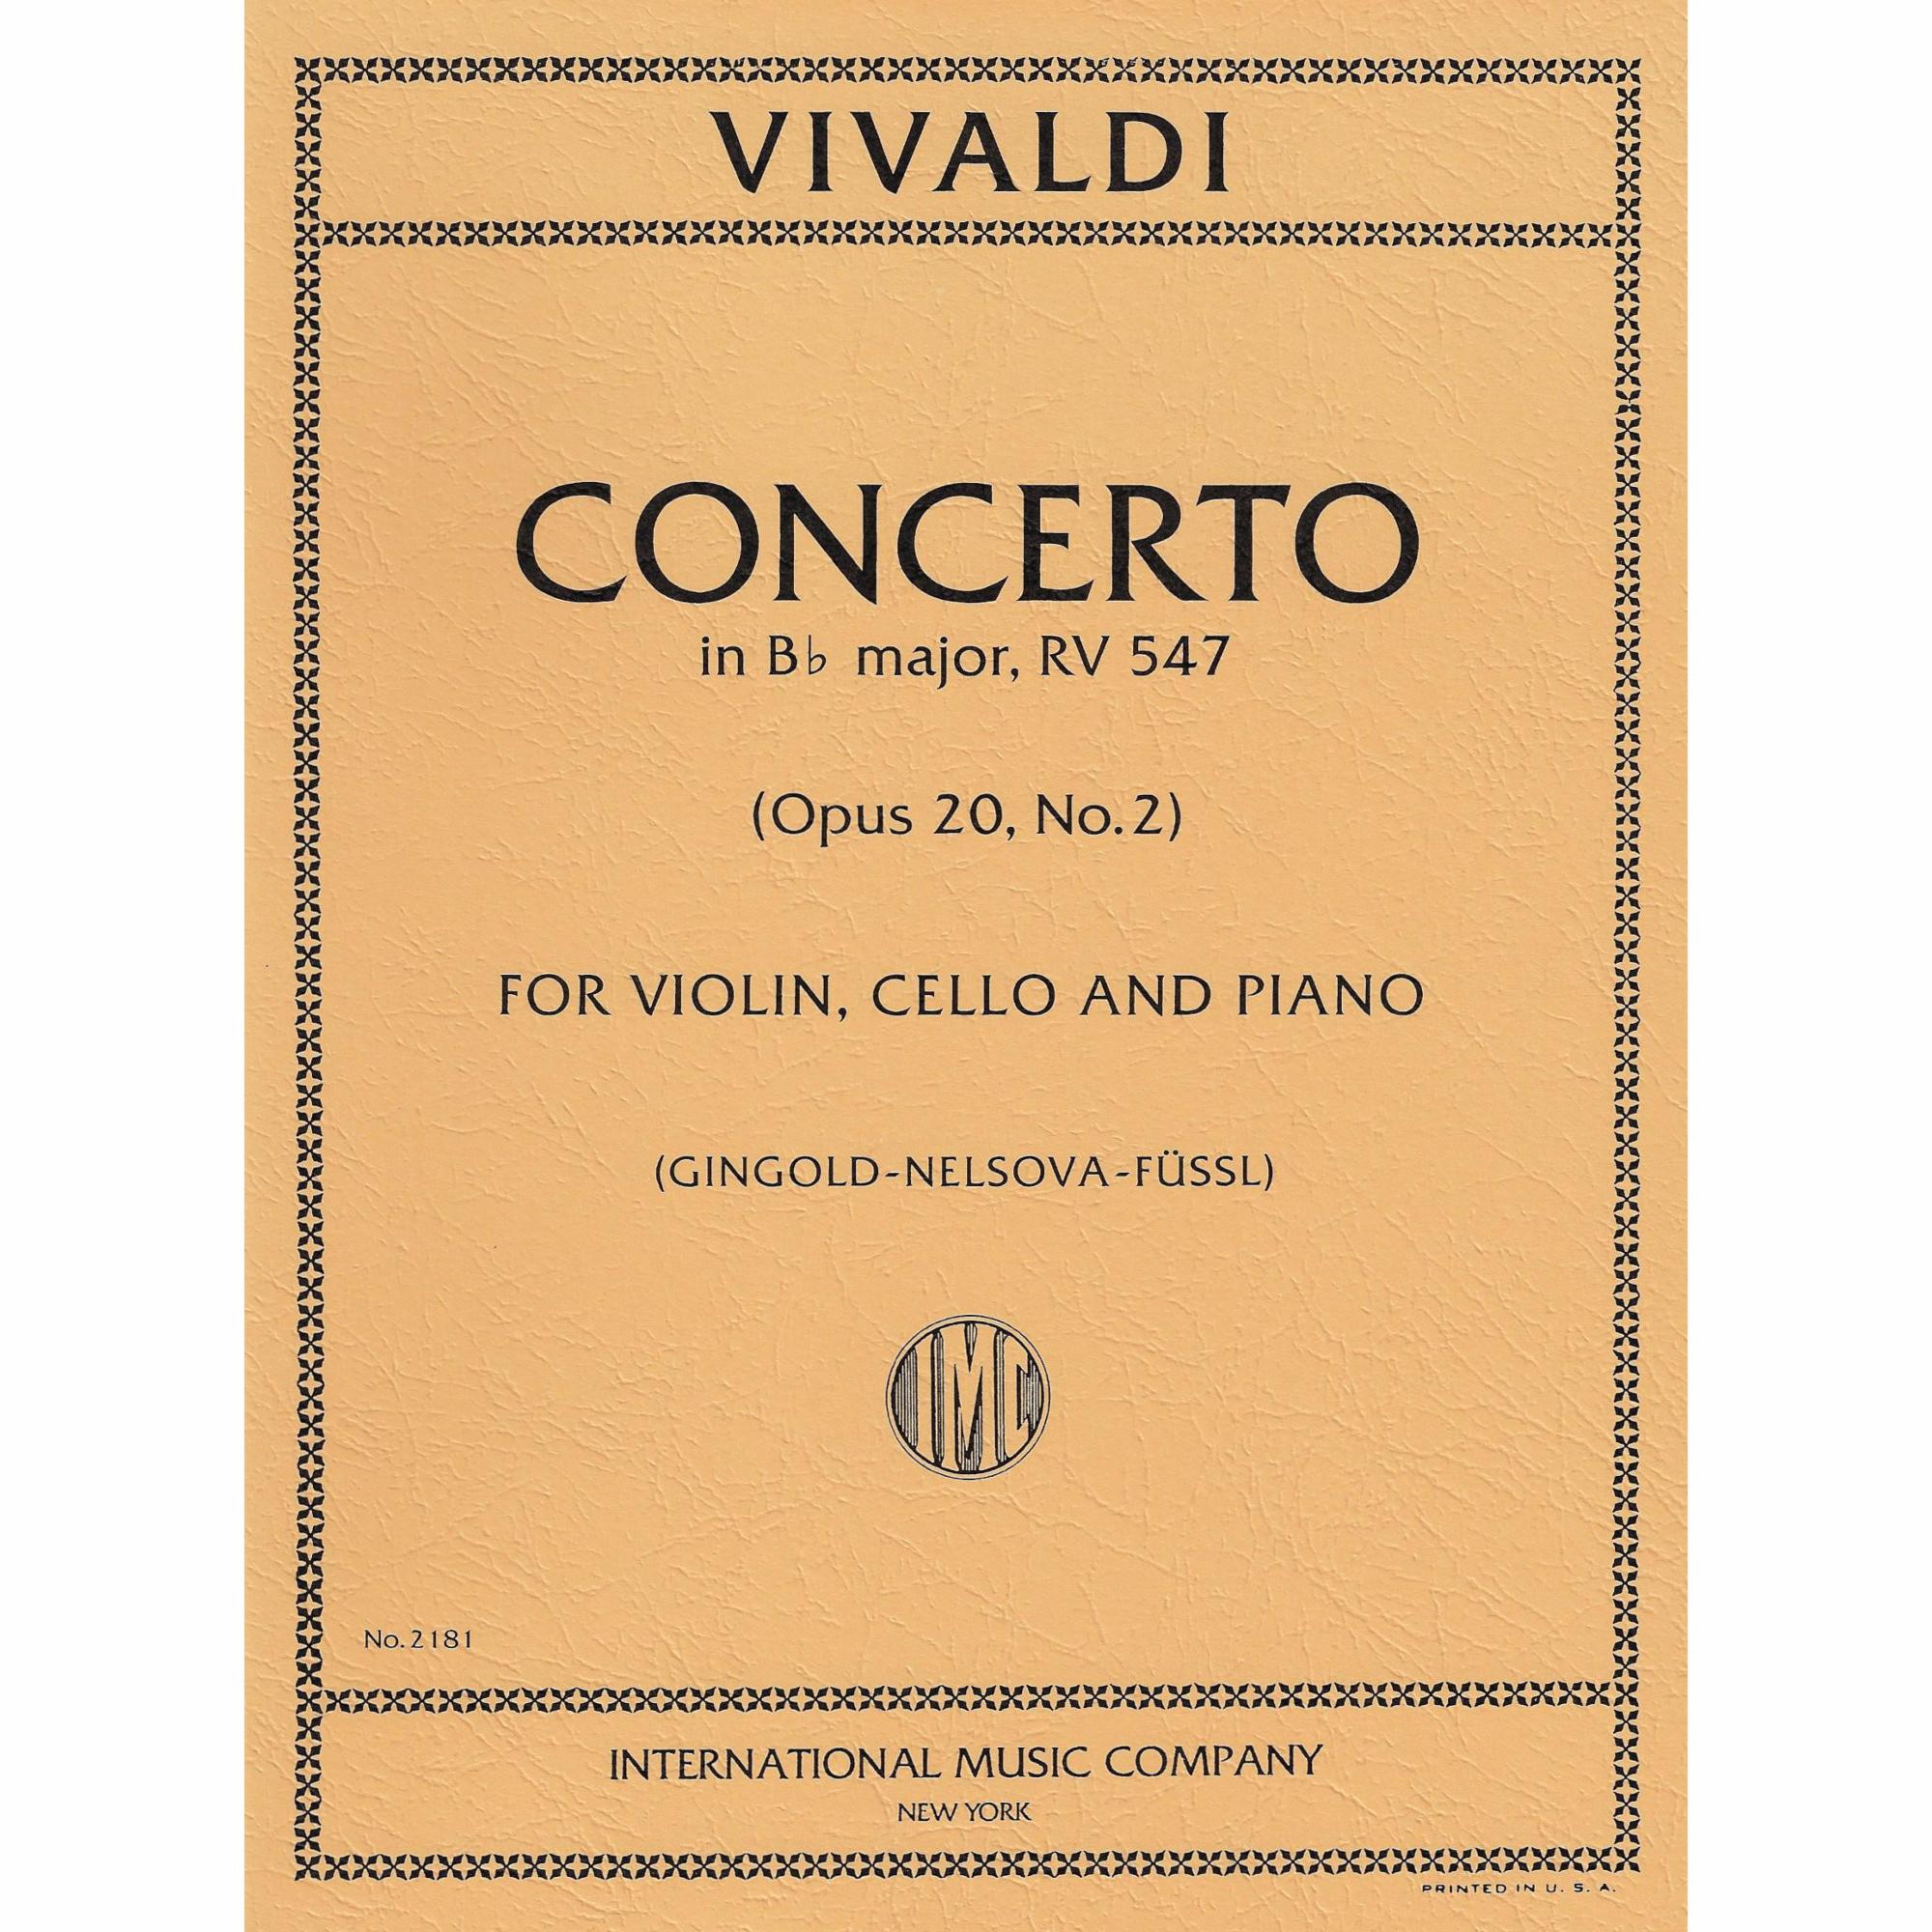 Vivaldi -- Concerto in B-flat Major, RV 547 for Violin, Cello, and Piano